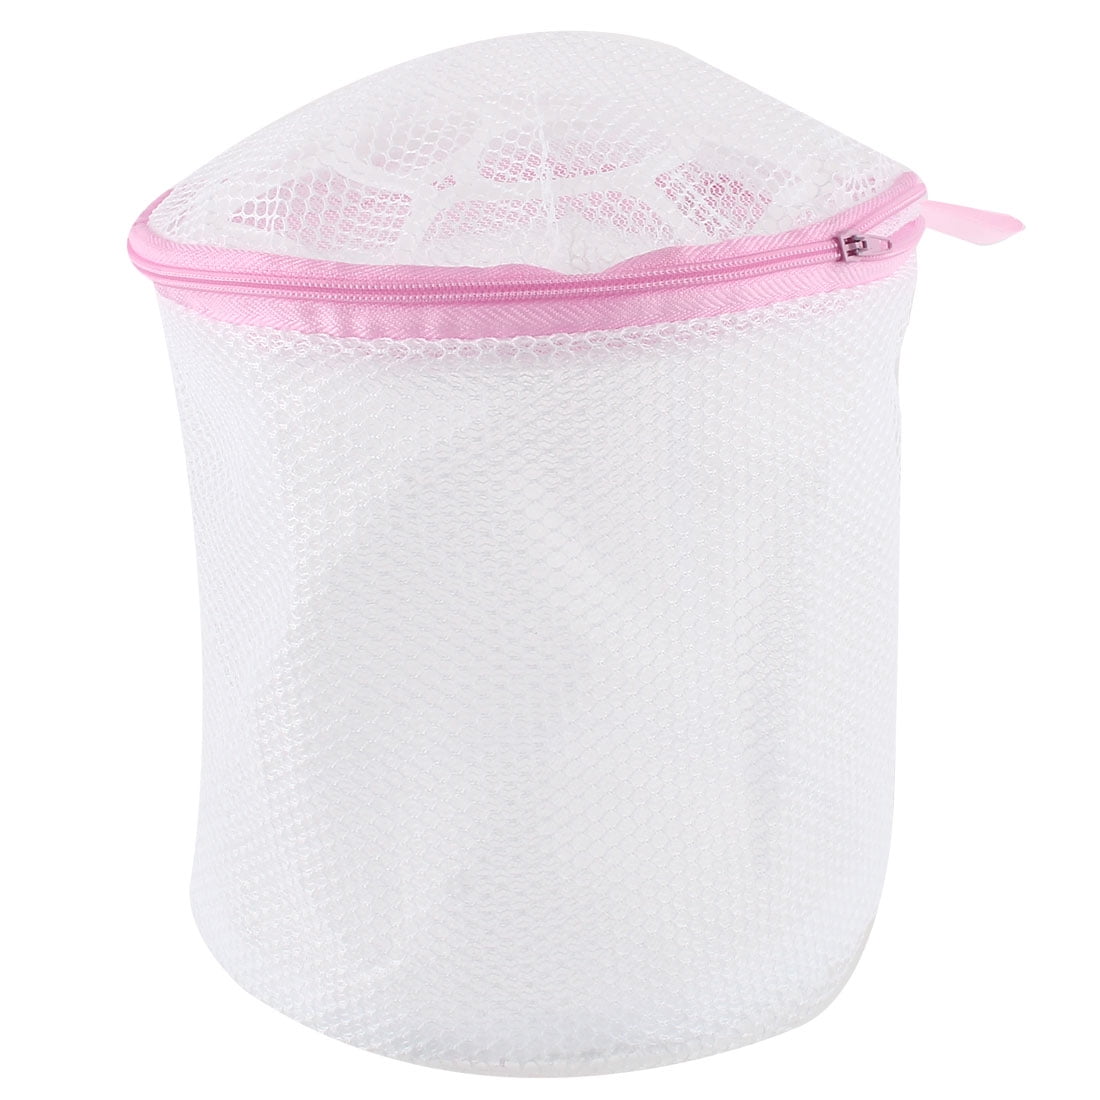 Delicates Laundry Bags Bra Fine Mesh Wash Bag for Underwear White, 3 Small